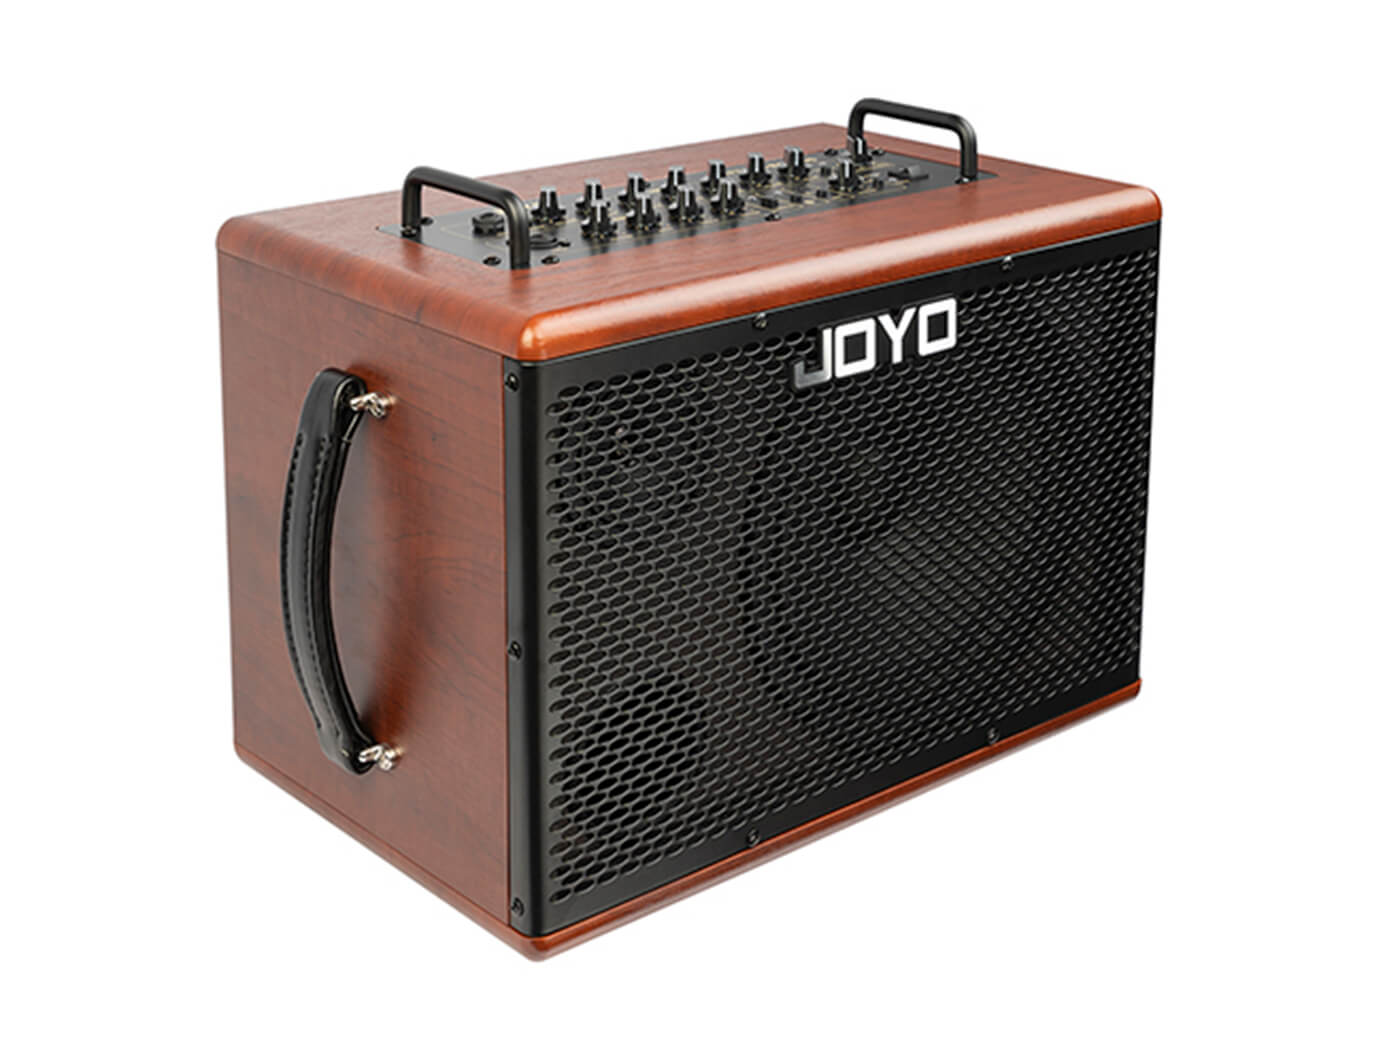 Joyo BSK-60 acoustic guitar amplifier